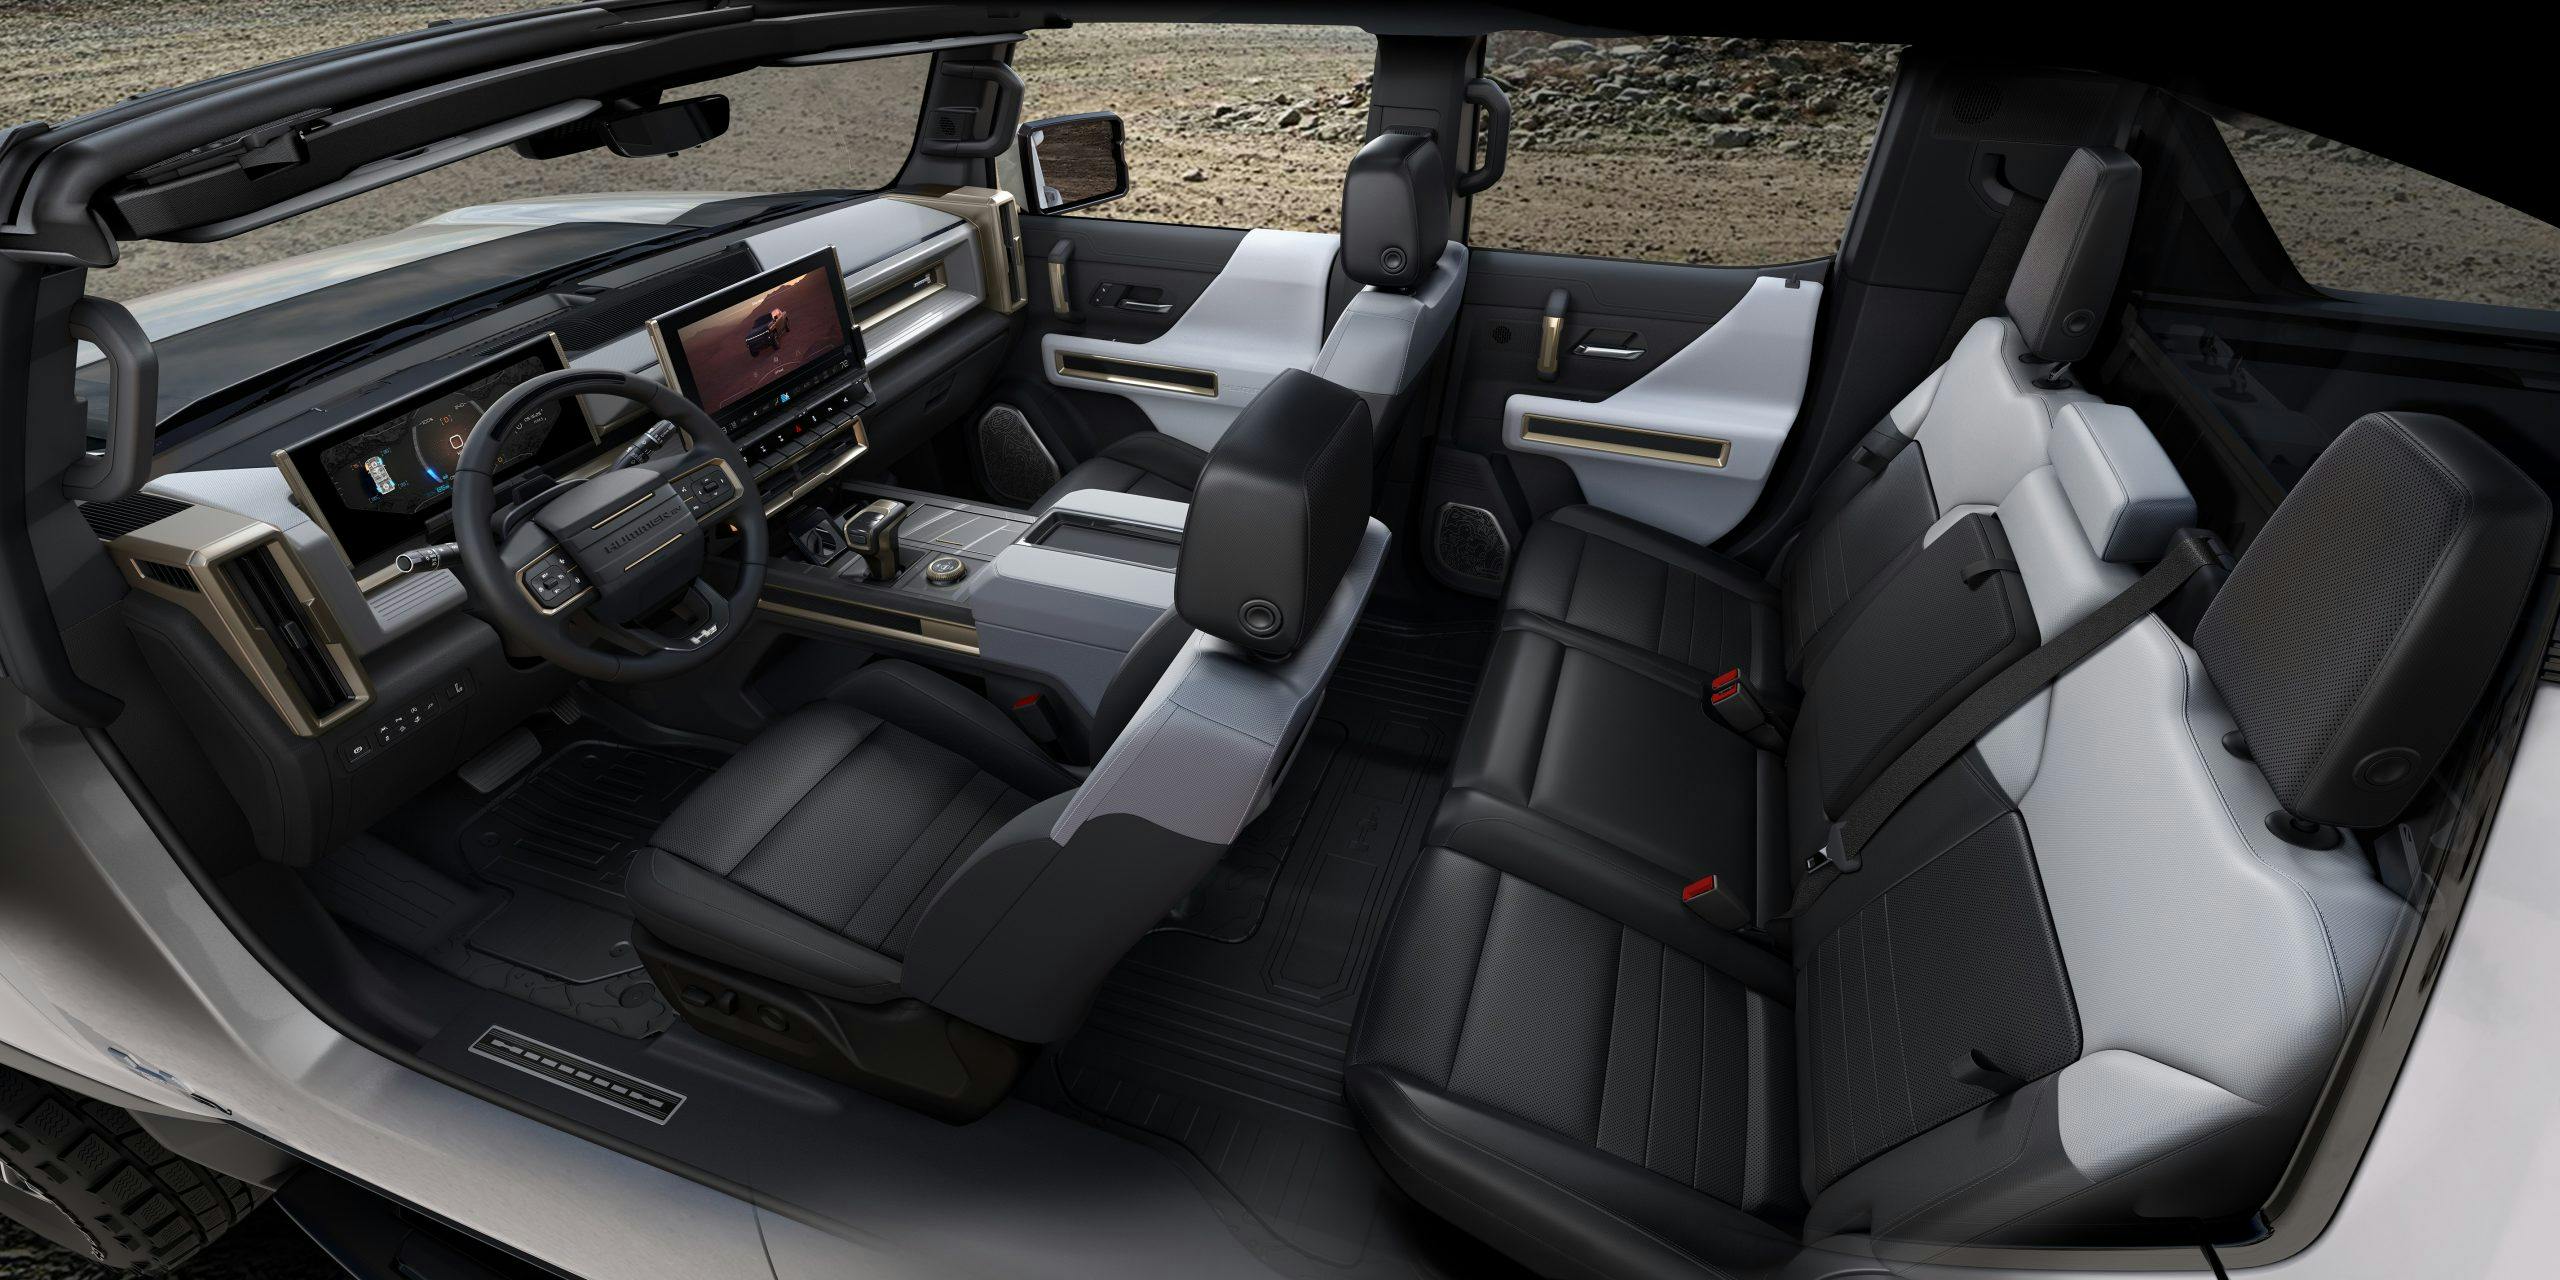 2022 Hummer EV interior